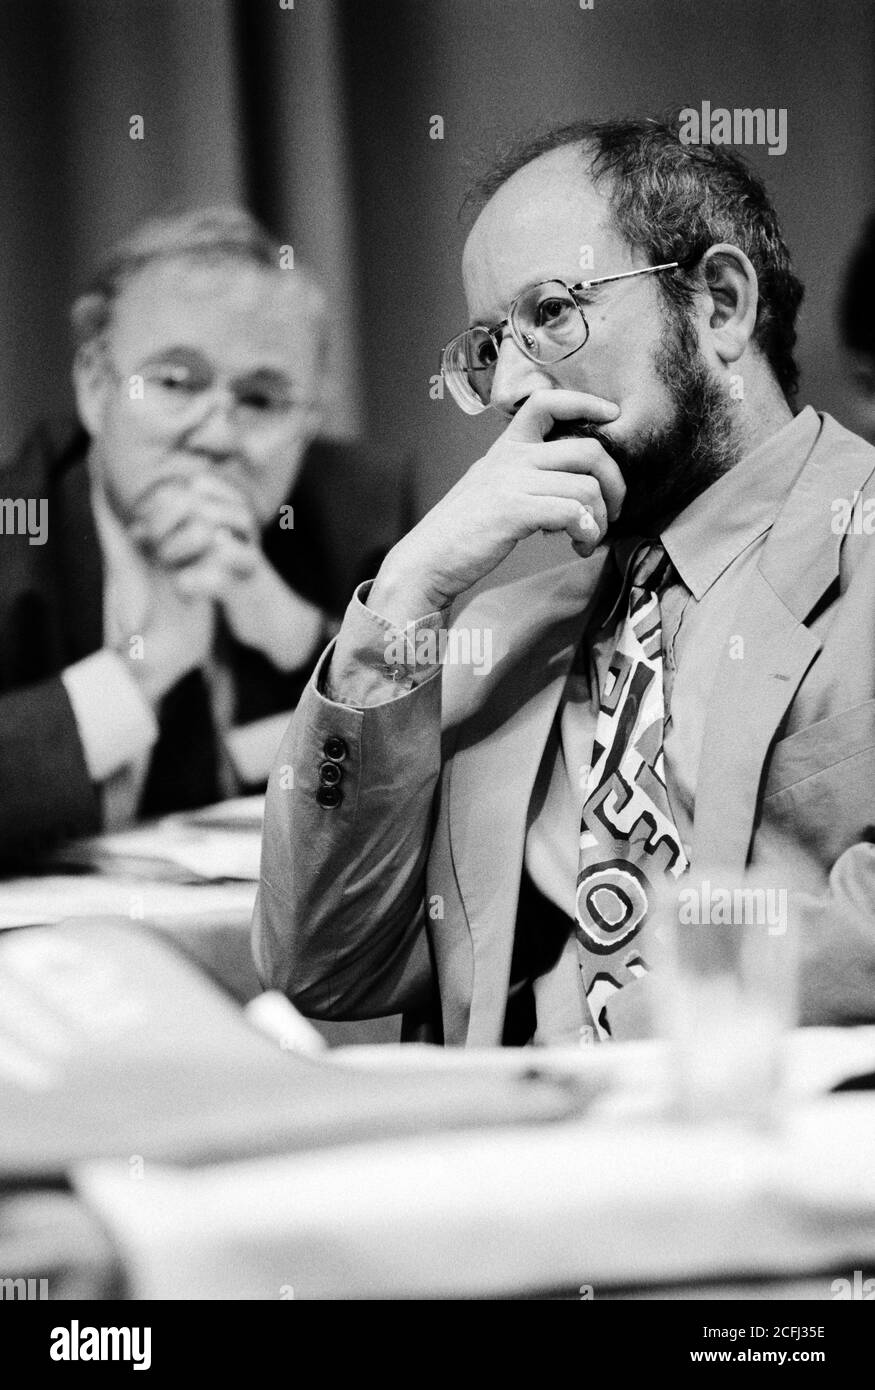 Il Segretario Generale della NATFHE Geoff Woolf sulla piattaforma durante la loro Conferenza annuale all'Università dell'Essex. 04 luglio 1992. Foto: Neil Turner Foto Stock